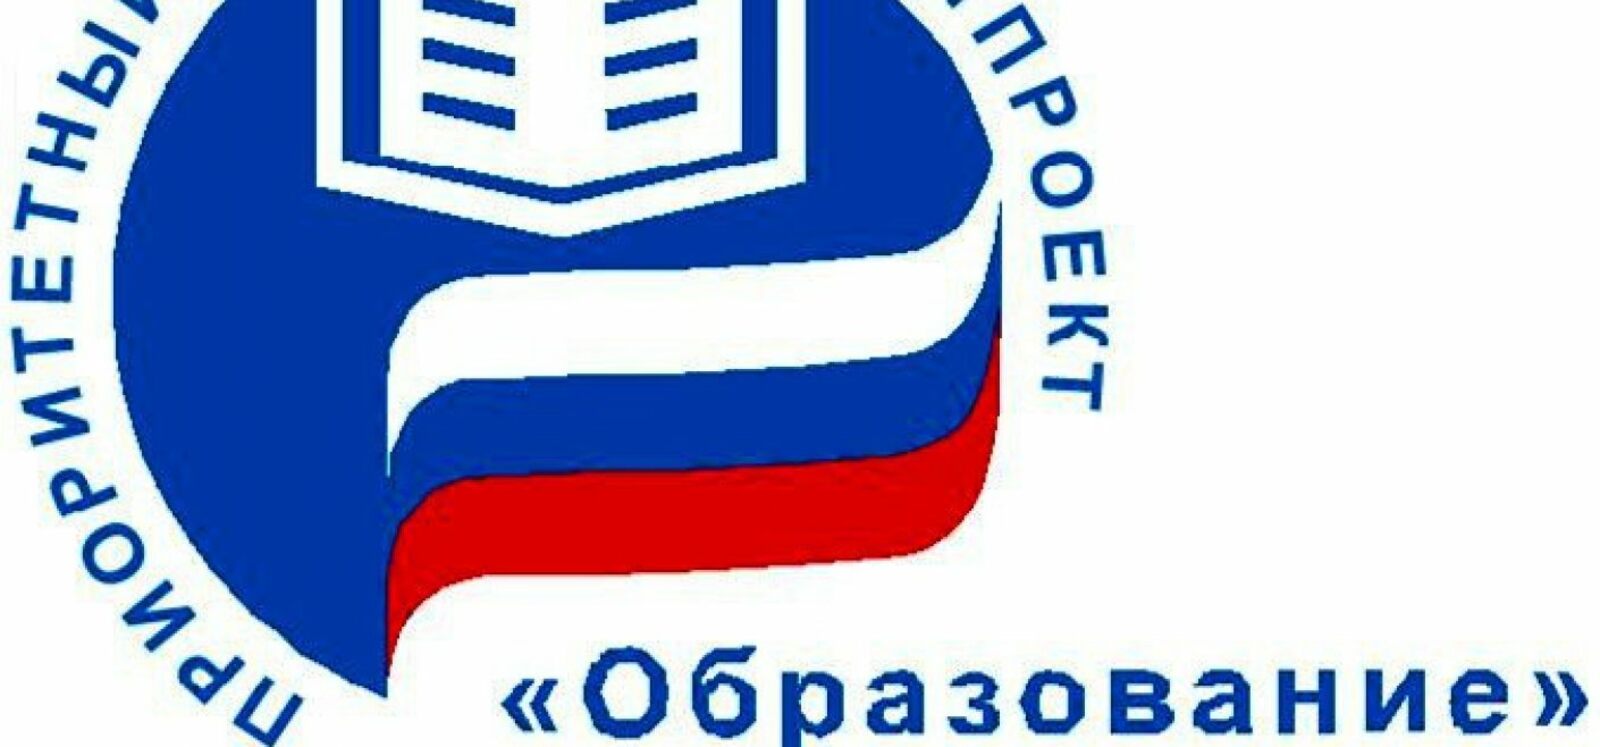 Школьная столовая в Уфе признана лучшей на всероссийском уровне